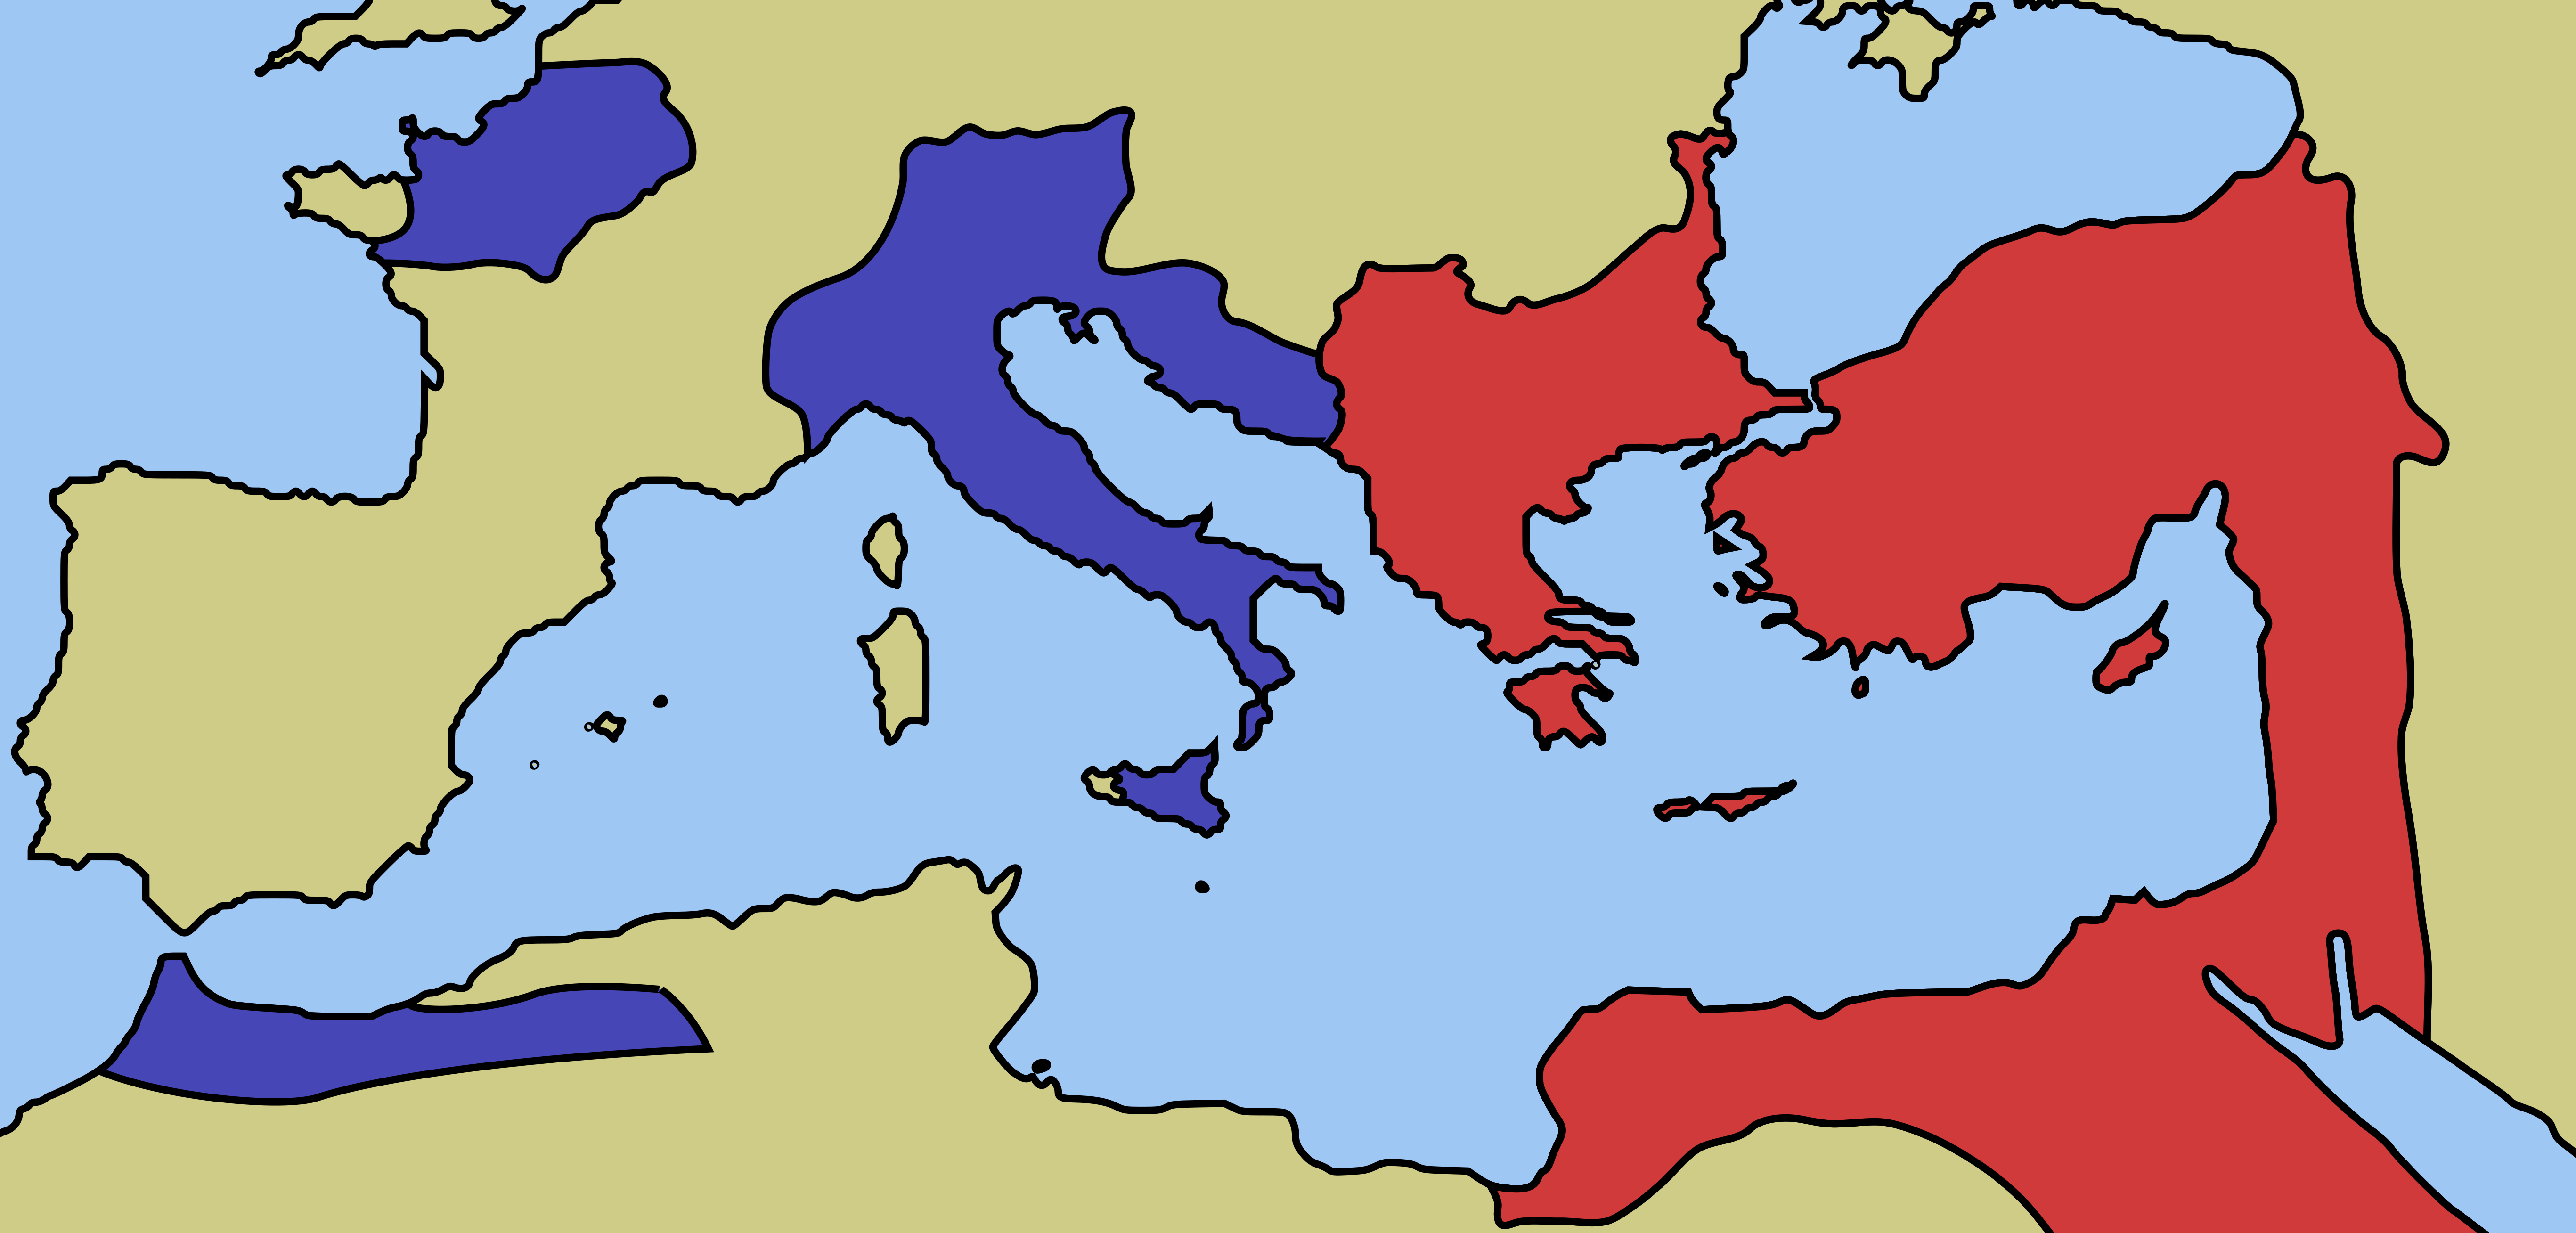 Kartenansicht des römischen Reiches zur Zeit seiner größten Ausdehnung beim Tod Kaiser Trajans 117 n. Chr.